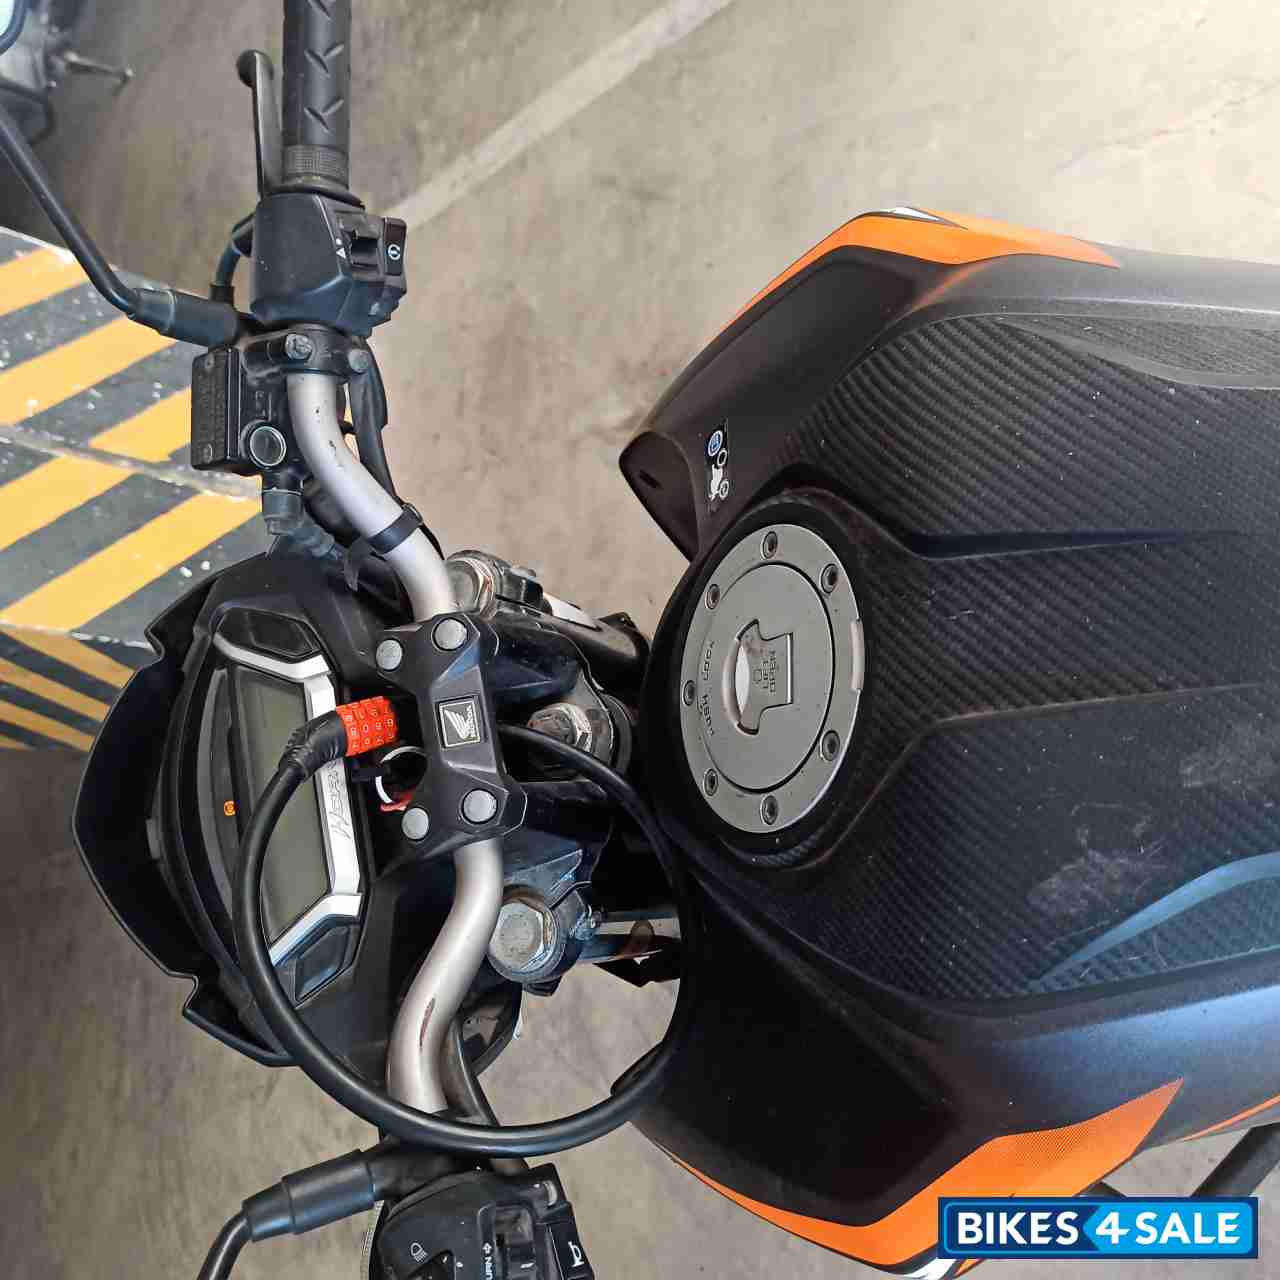 Orange And Black Honda CB Hornet 160R ABS